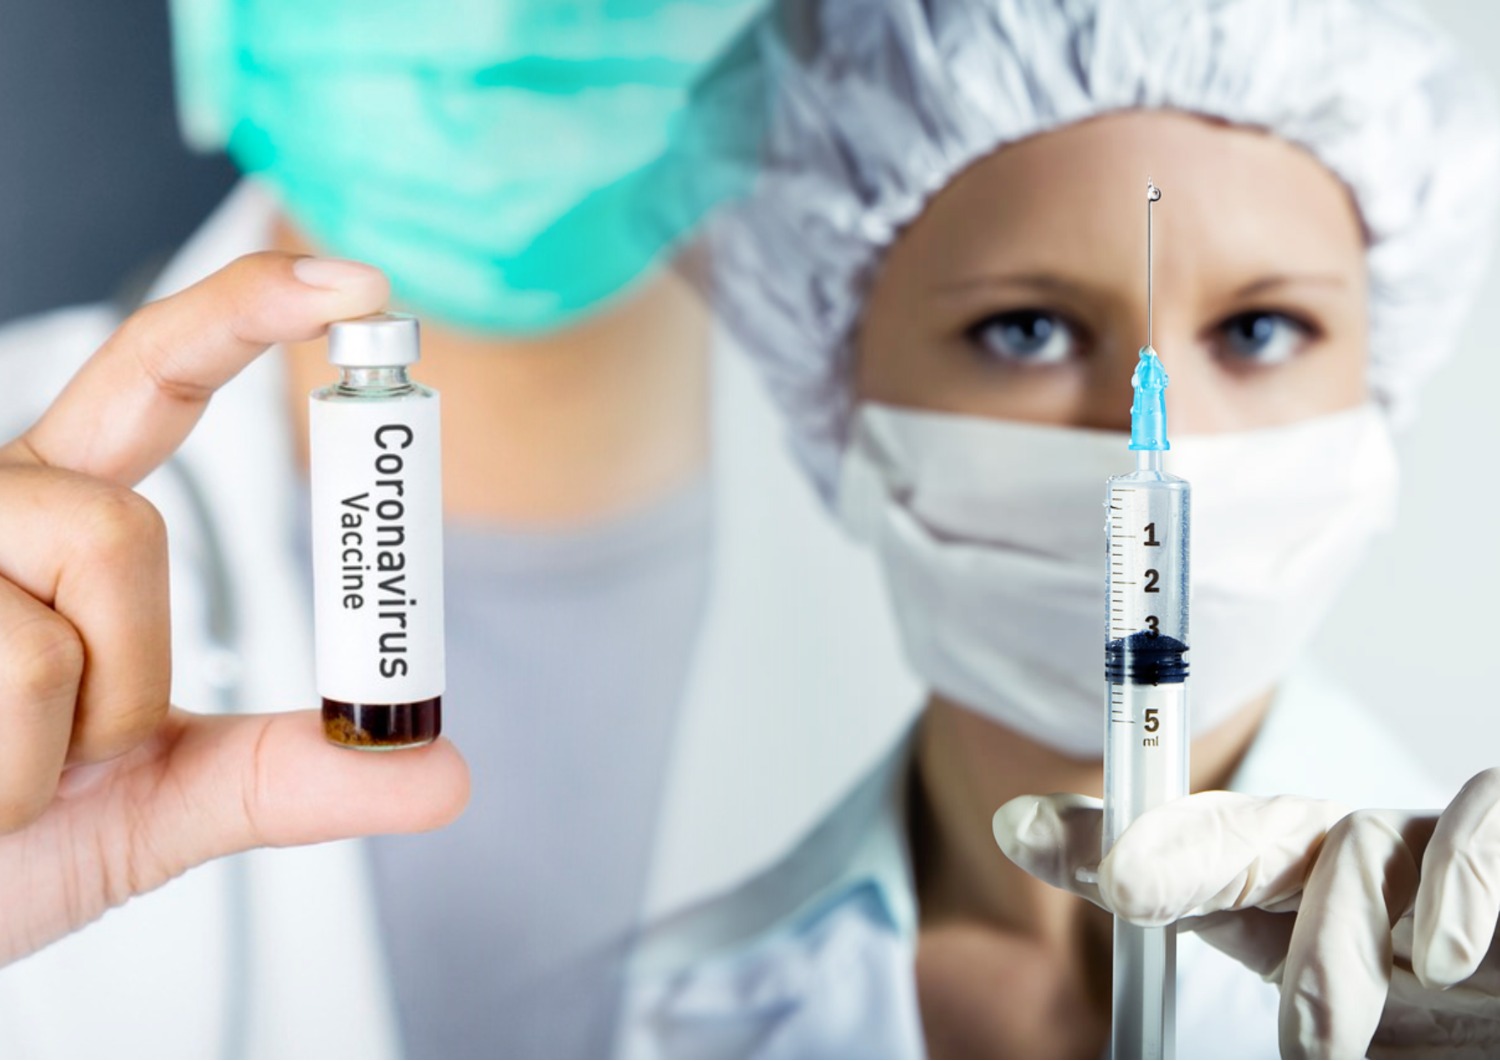 Вакцина - единственный надежный способ избежать заражения